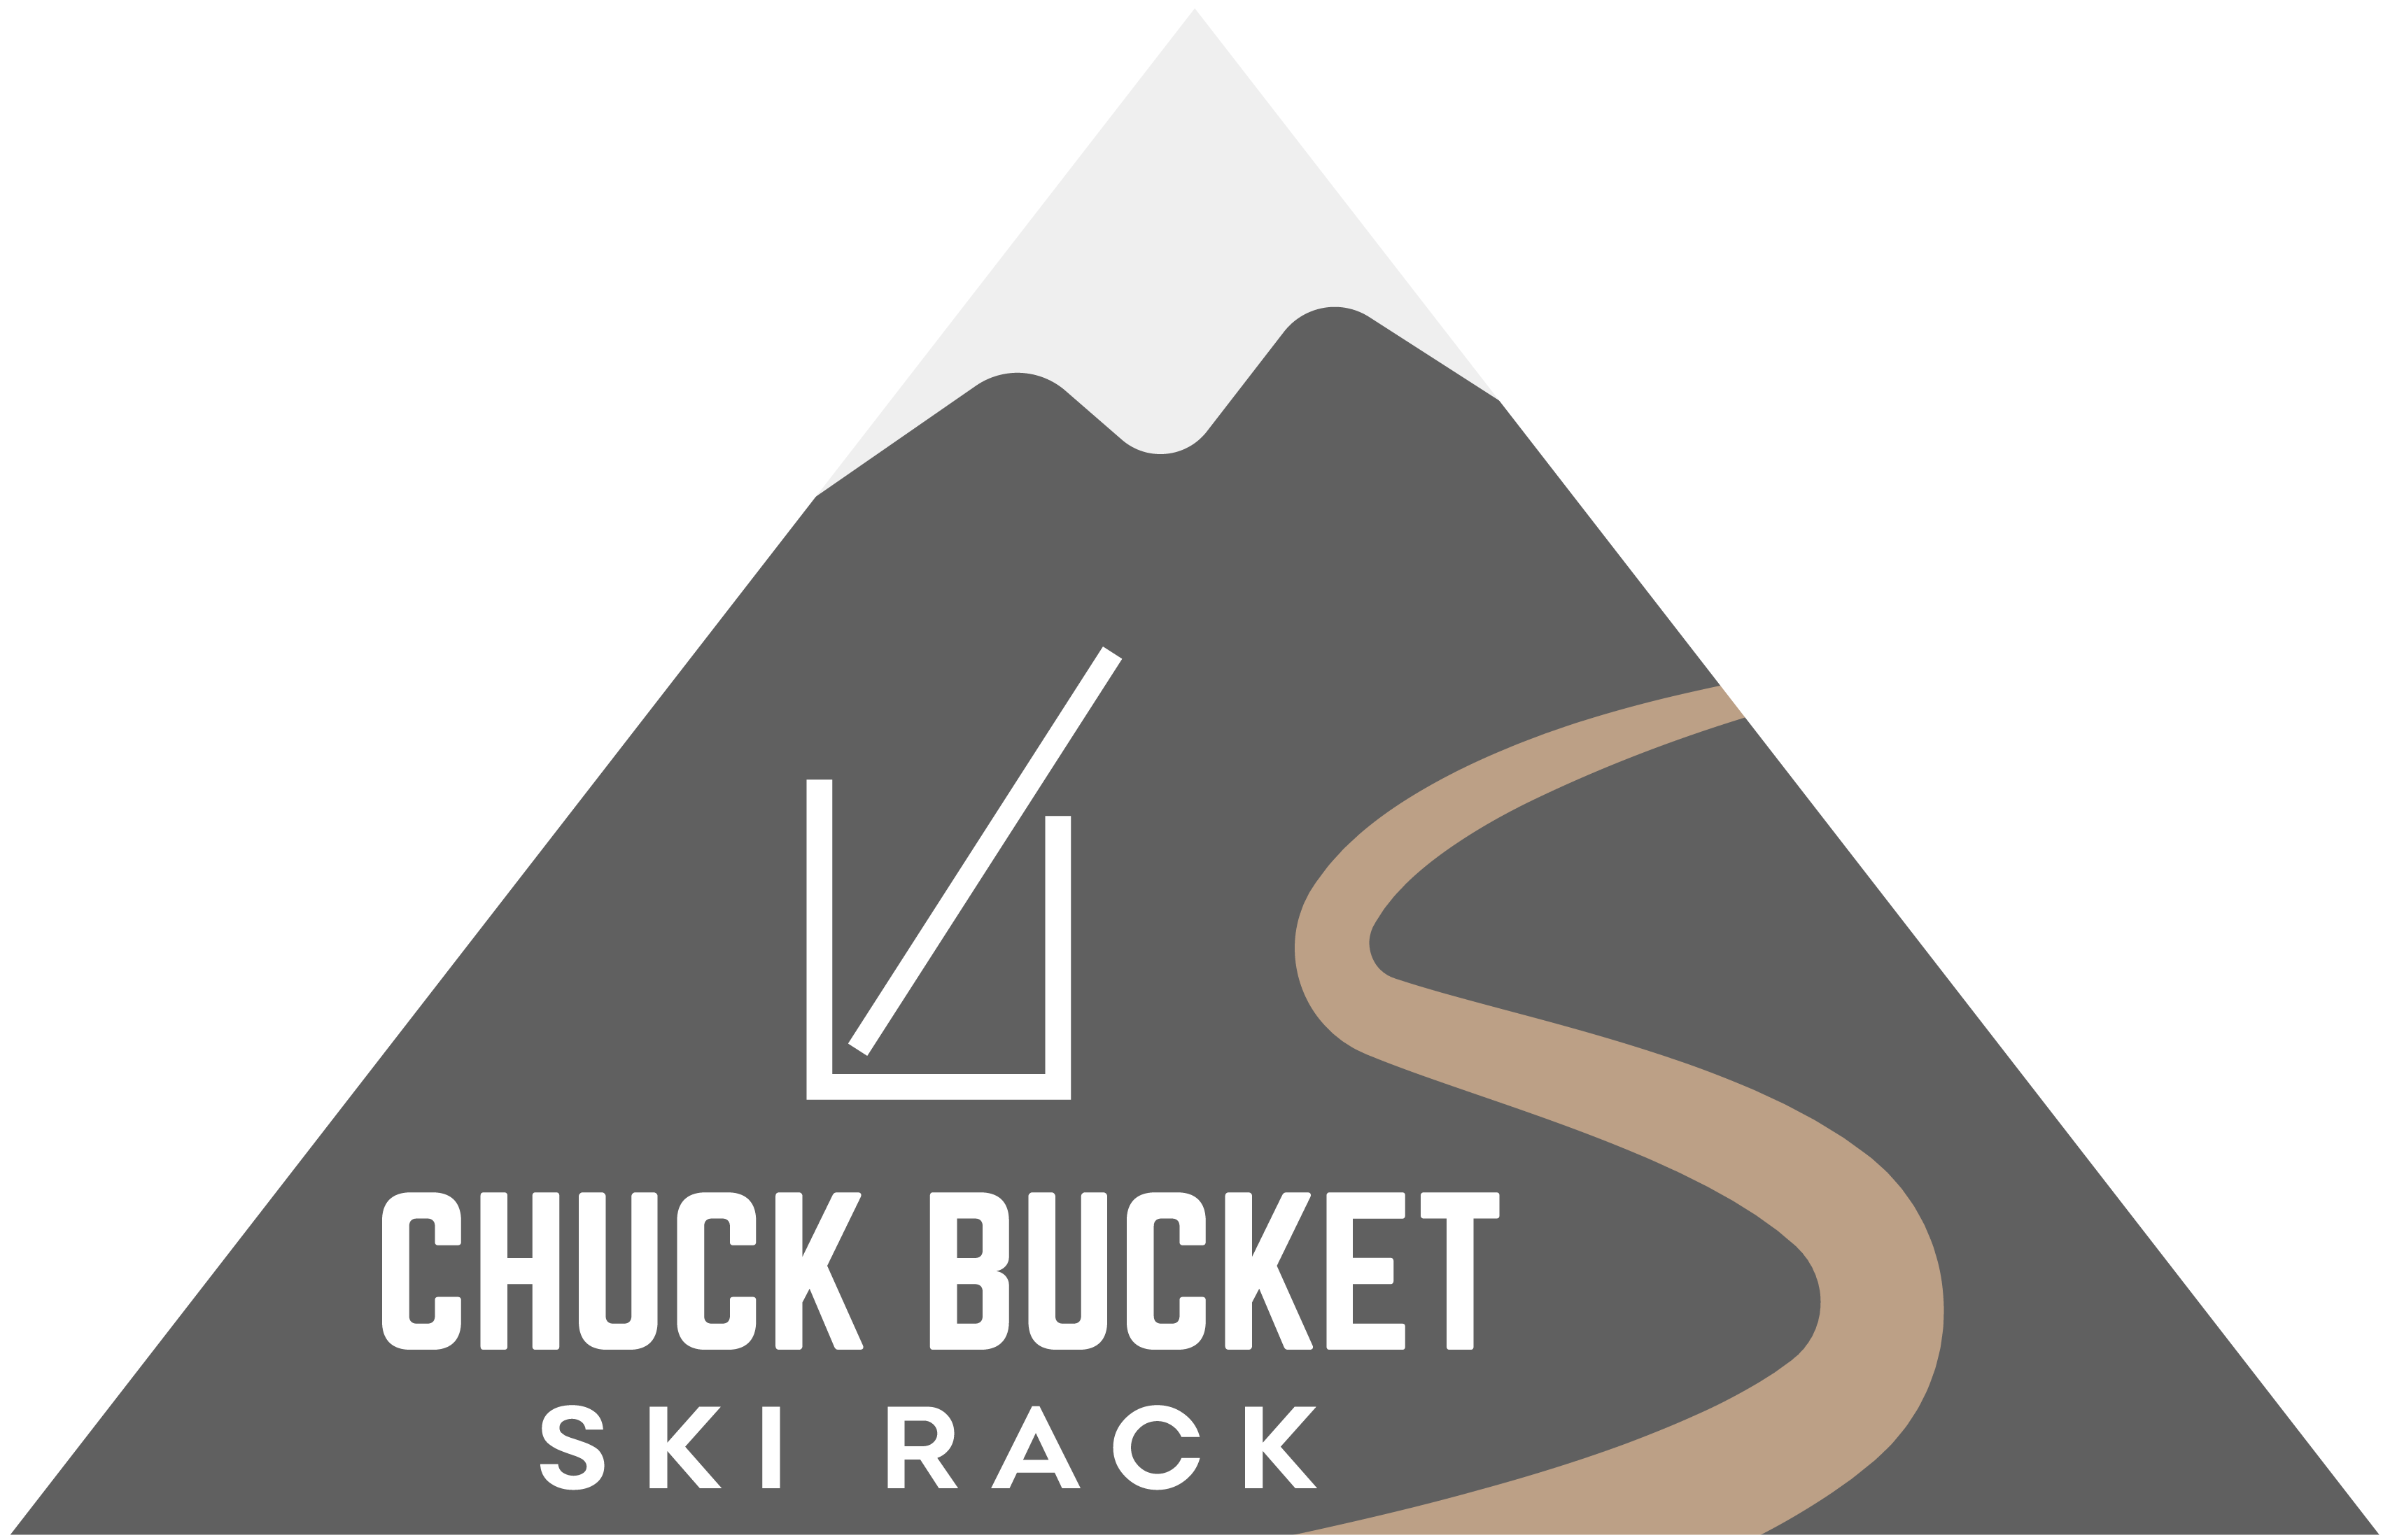 Chuckbucket